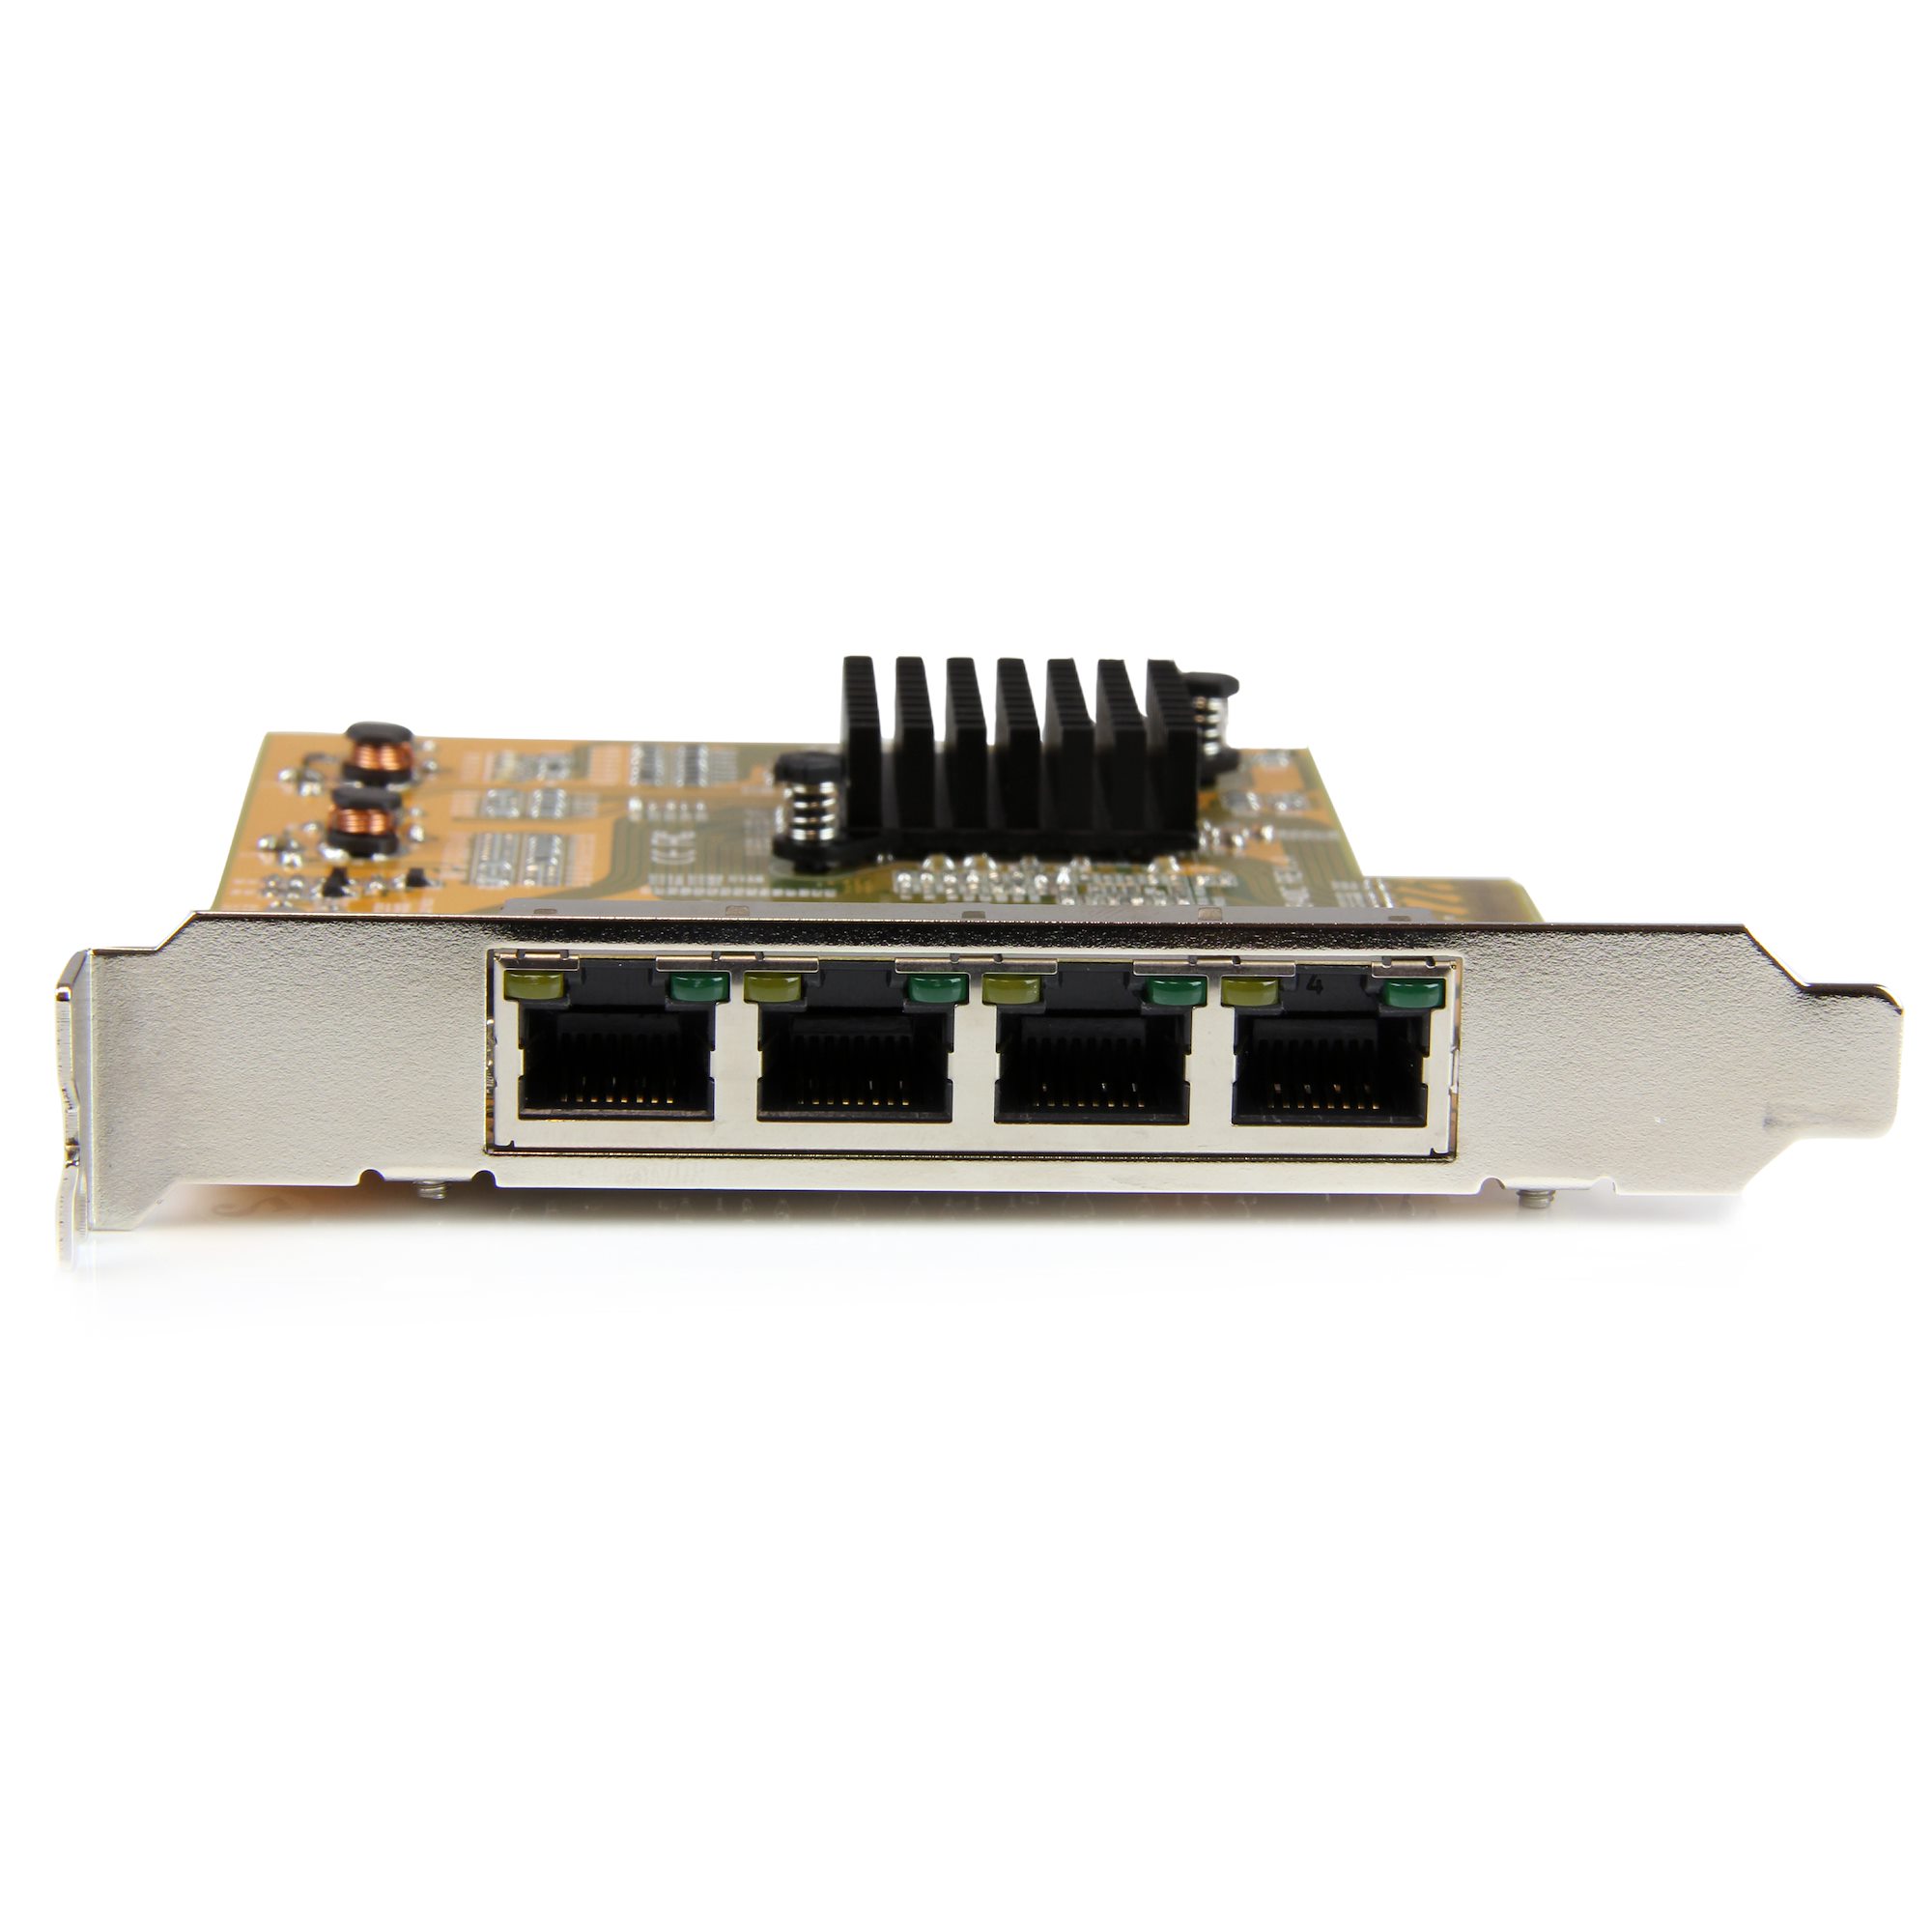 ギガビットイーサネット4ポート増設PCIe対応ネットワークLANアダプタカード